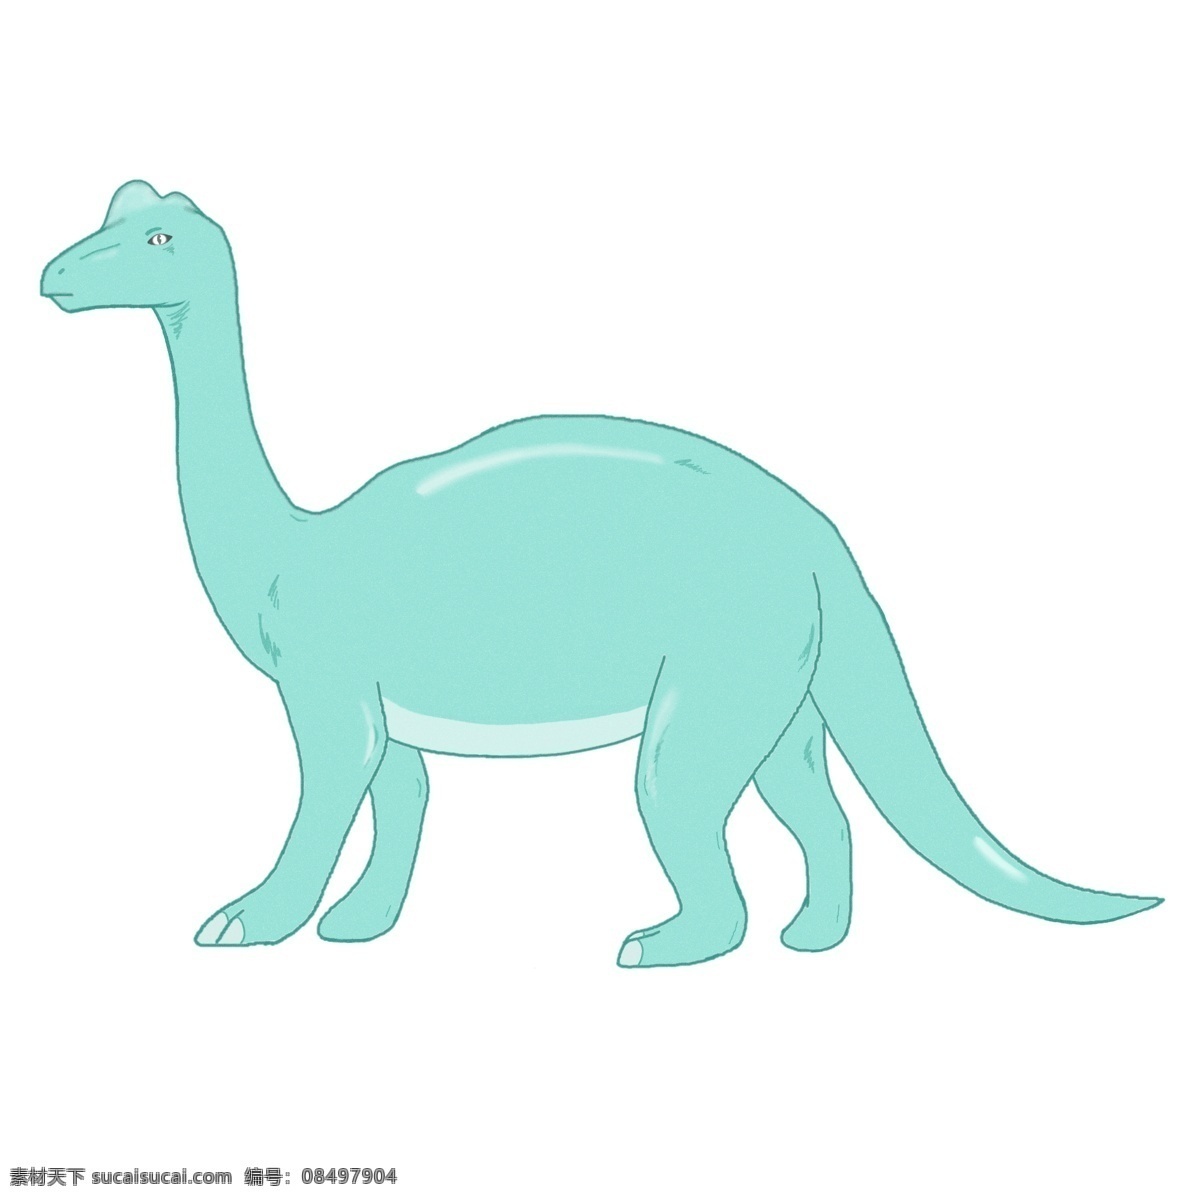 漂亮 绿色 恐龙 插画 漂亮的恐龙 绿色恐龙 行走的恐龙 小动物 灭绝动物 可爱的恐龙 卡通恐龙插画